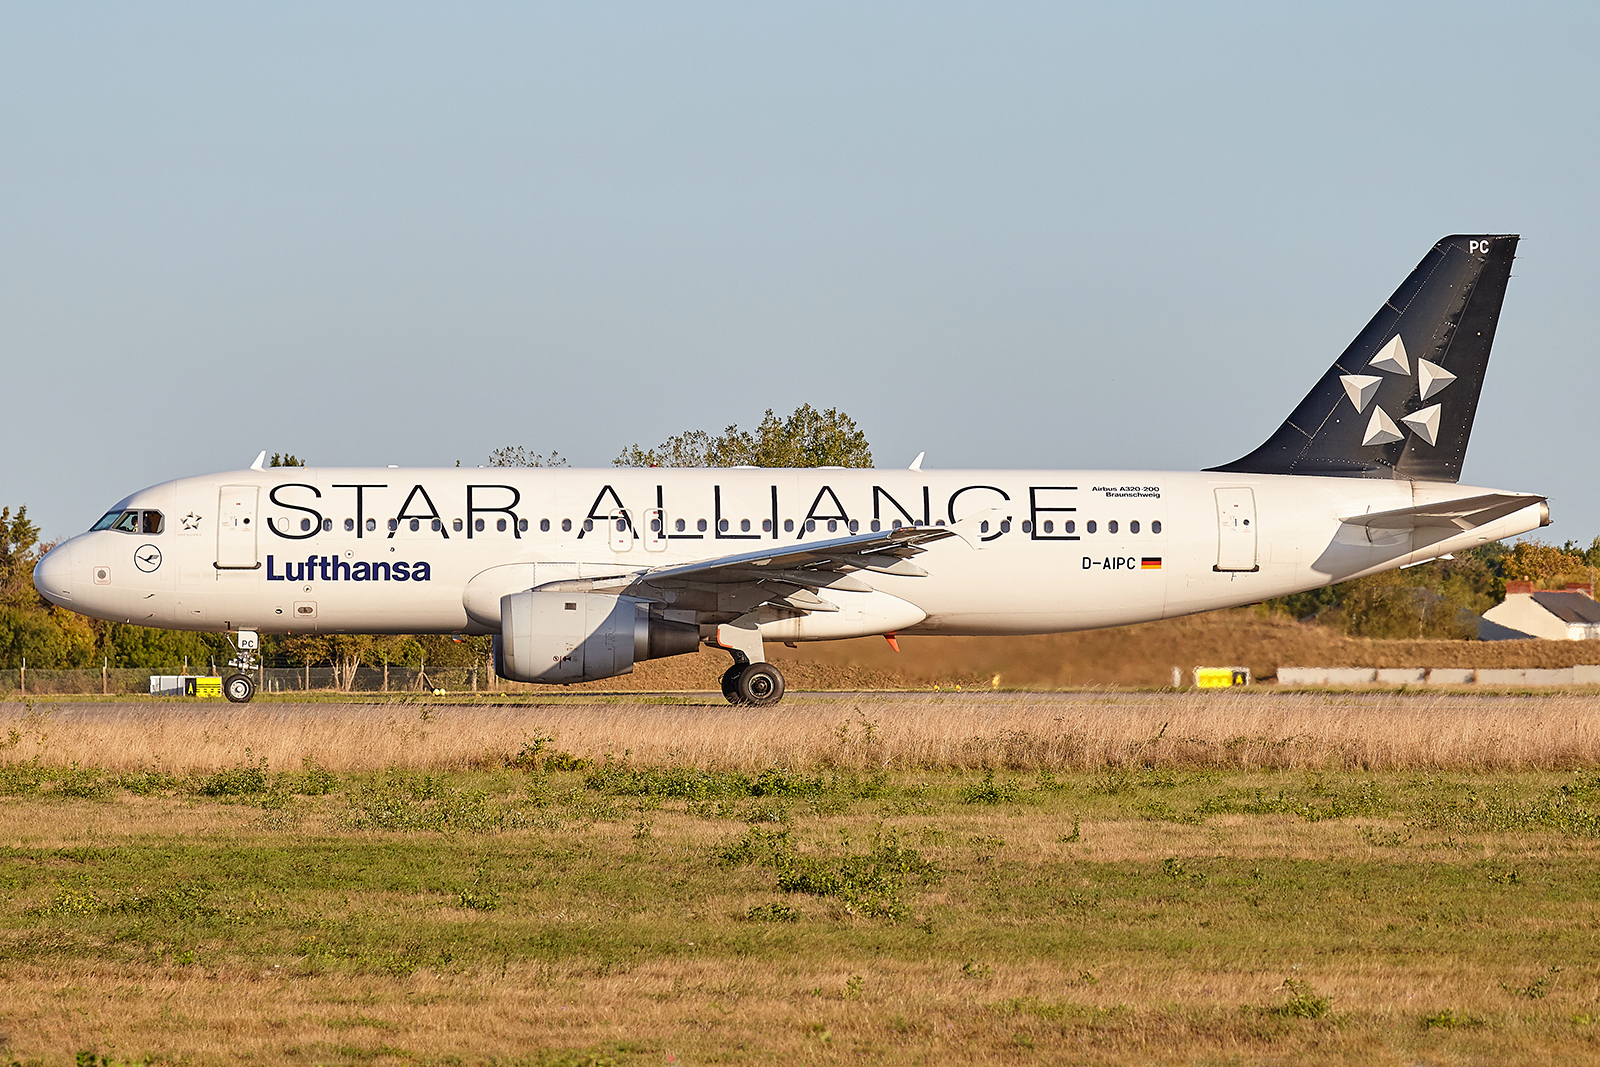 [15/09/2019] A320 (D-AIPC) Lufthansa "Star Alliance" TIAjIb-GRX-0287